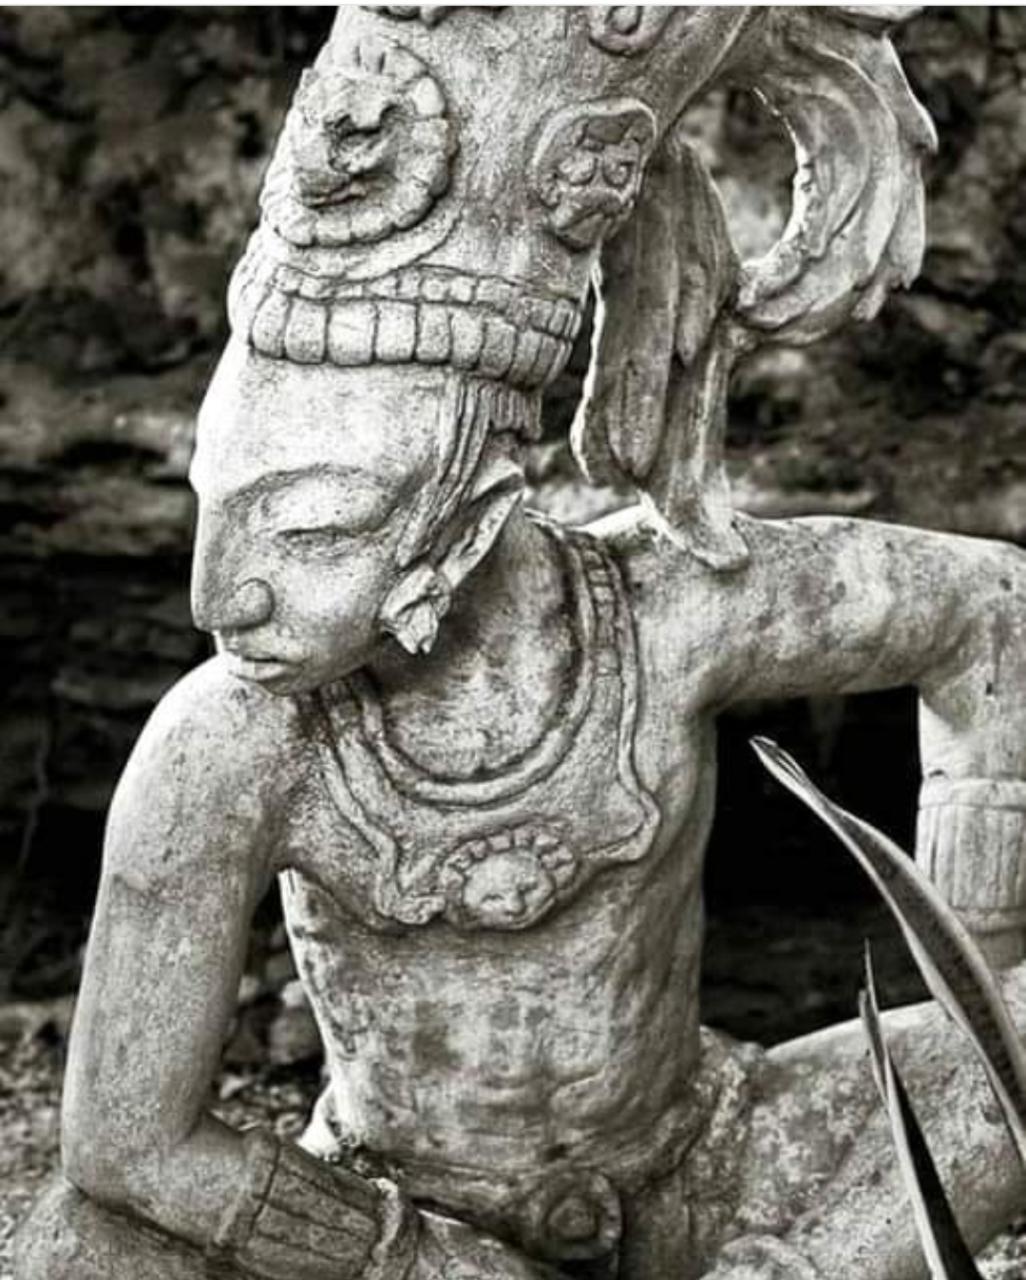 Maravillosa estatua que representa a un antiguo guerrero Maya, encontrada en la selva en la región de la Riviera Maya de México.